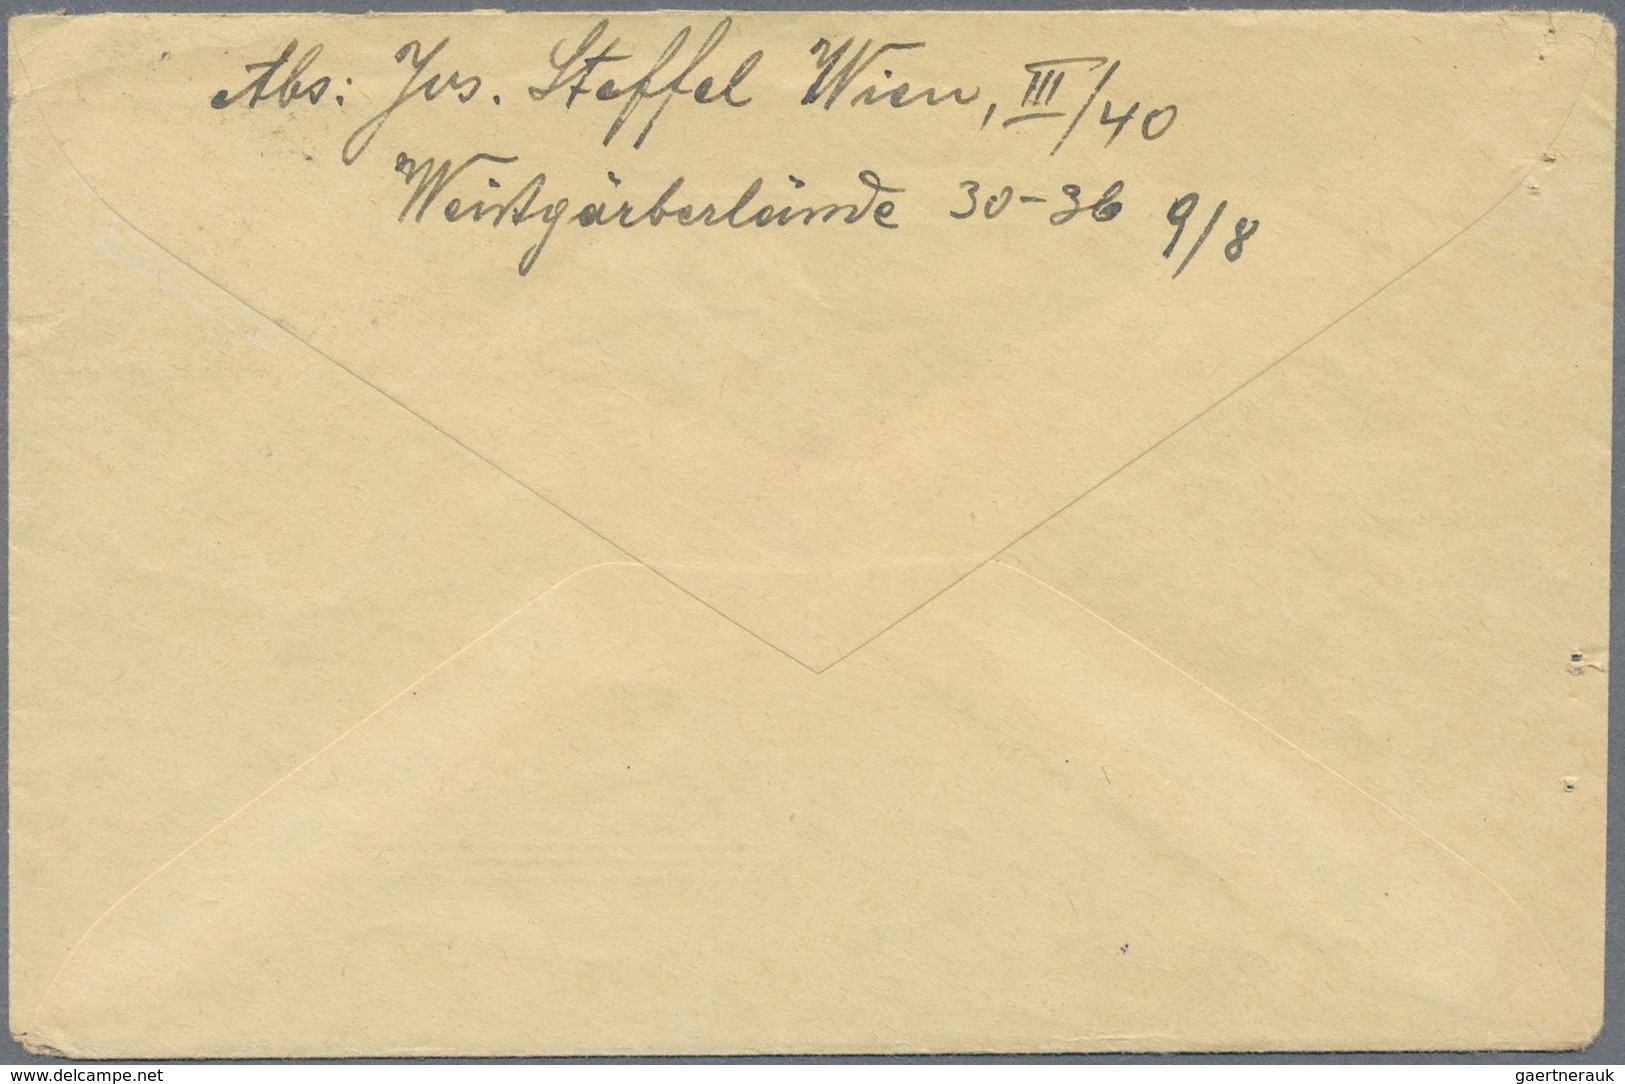 Br Feldpost 2. Weltkrieg: 1941 (21.12.), Luft-FP-Brief (mit Brieftext ) aus dem "Kessel von Stalingrad"